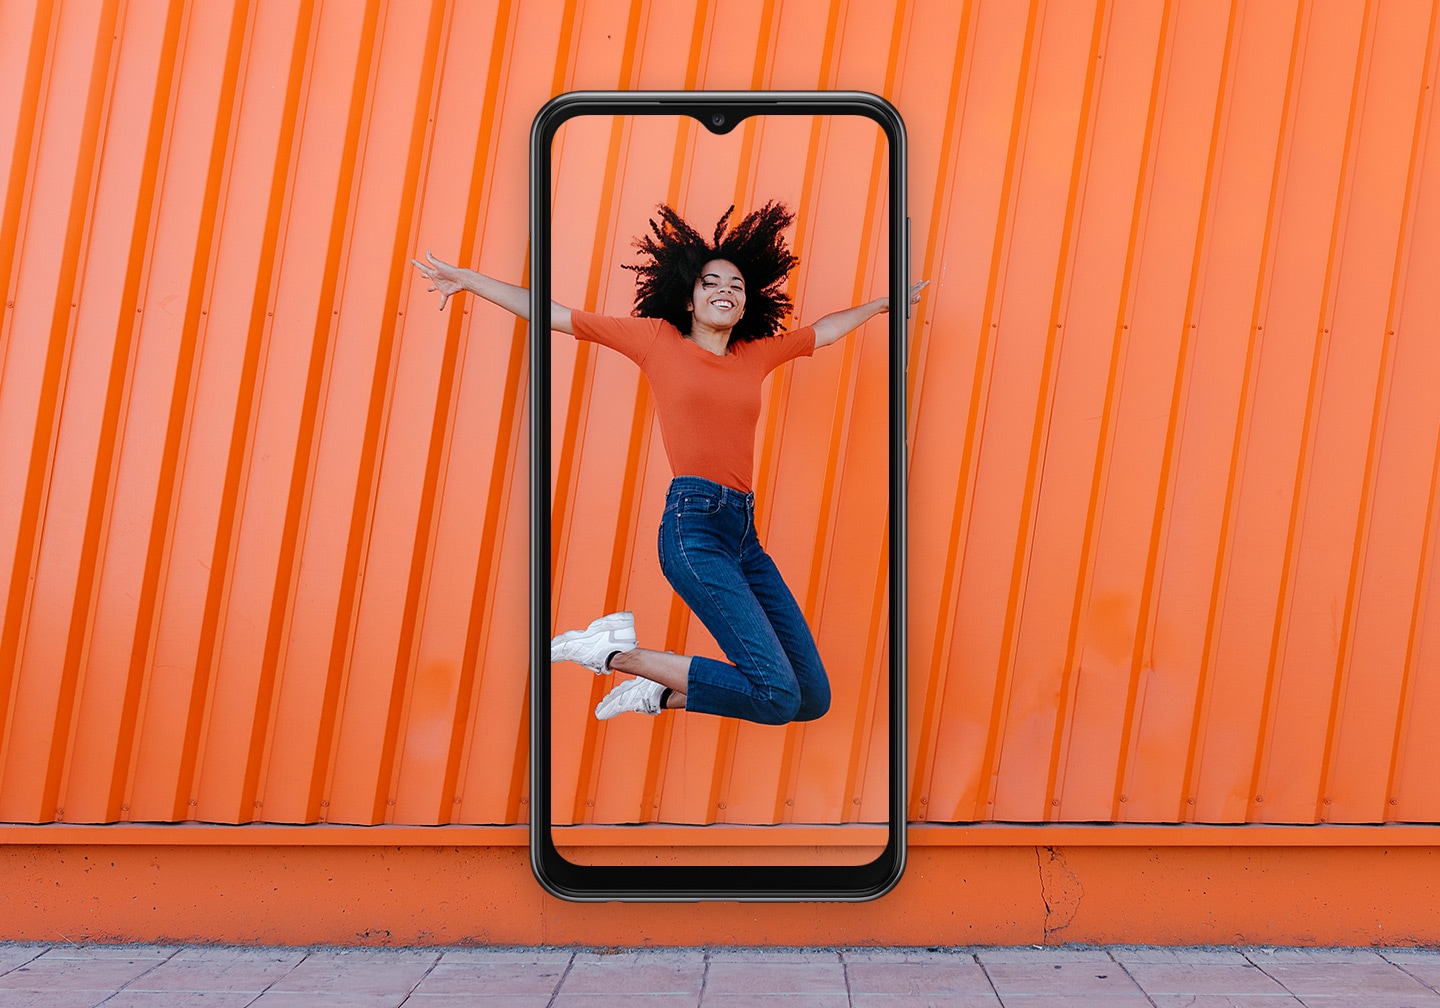 Женщина, улыбающаяся, находится в середине прыжка перед оранжевым фоном стены. В центре Galaxy A23 накладывается друг на друга и захватывает женщину внутри экрана.